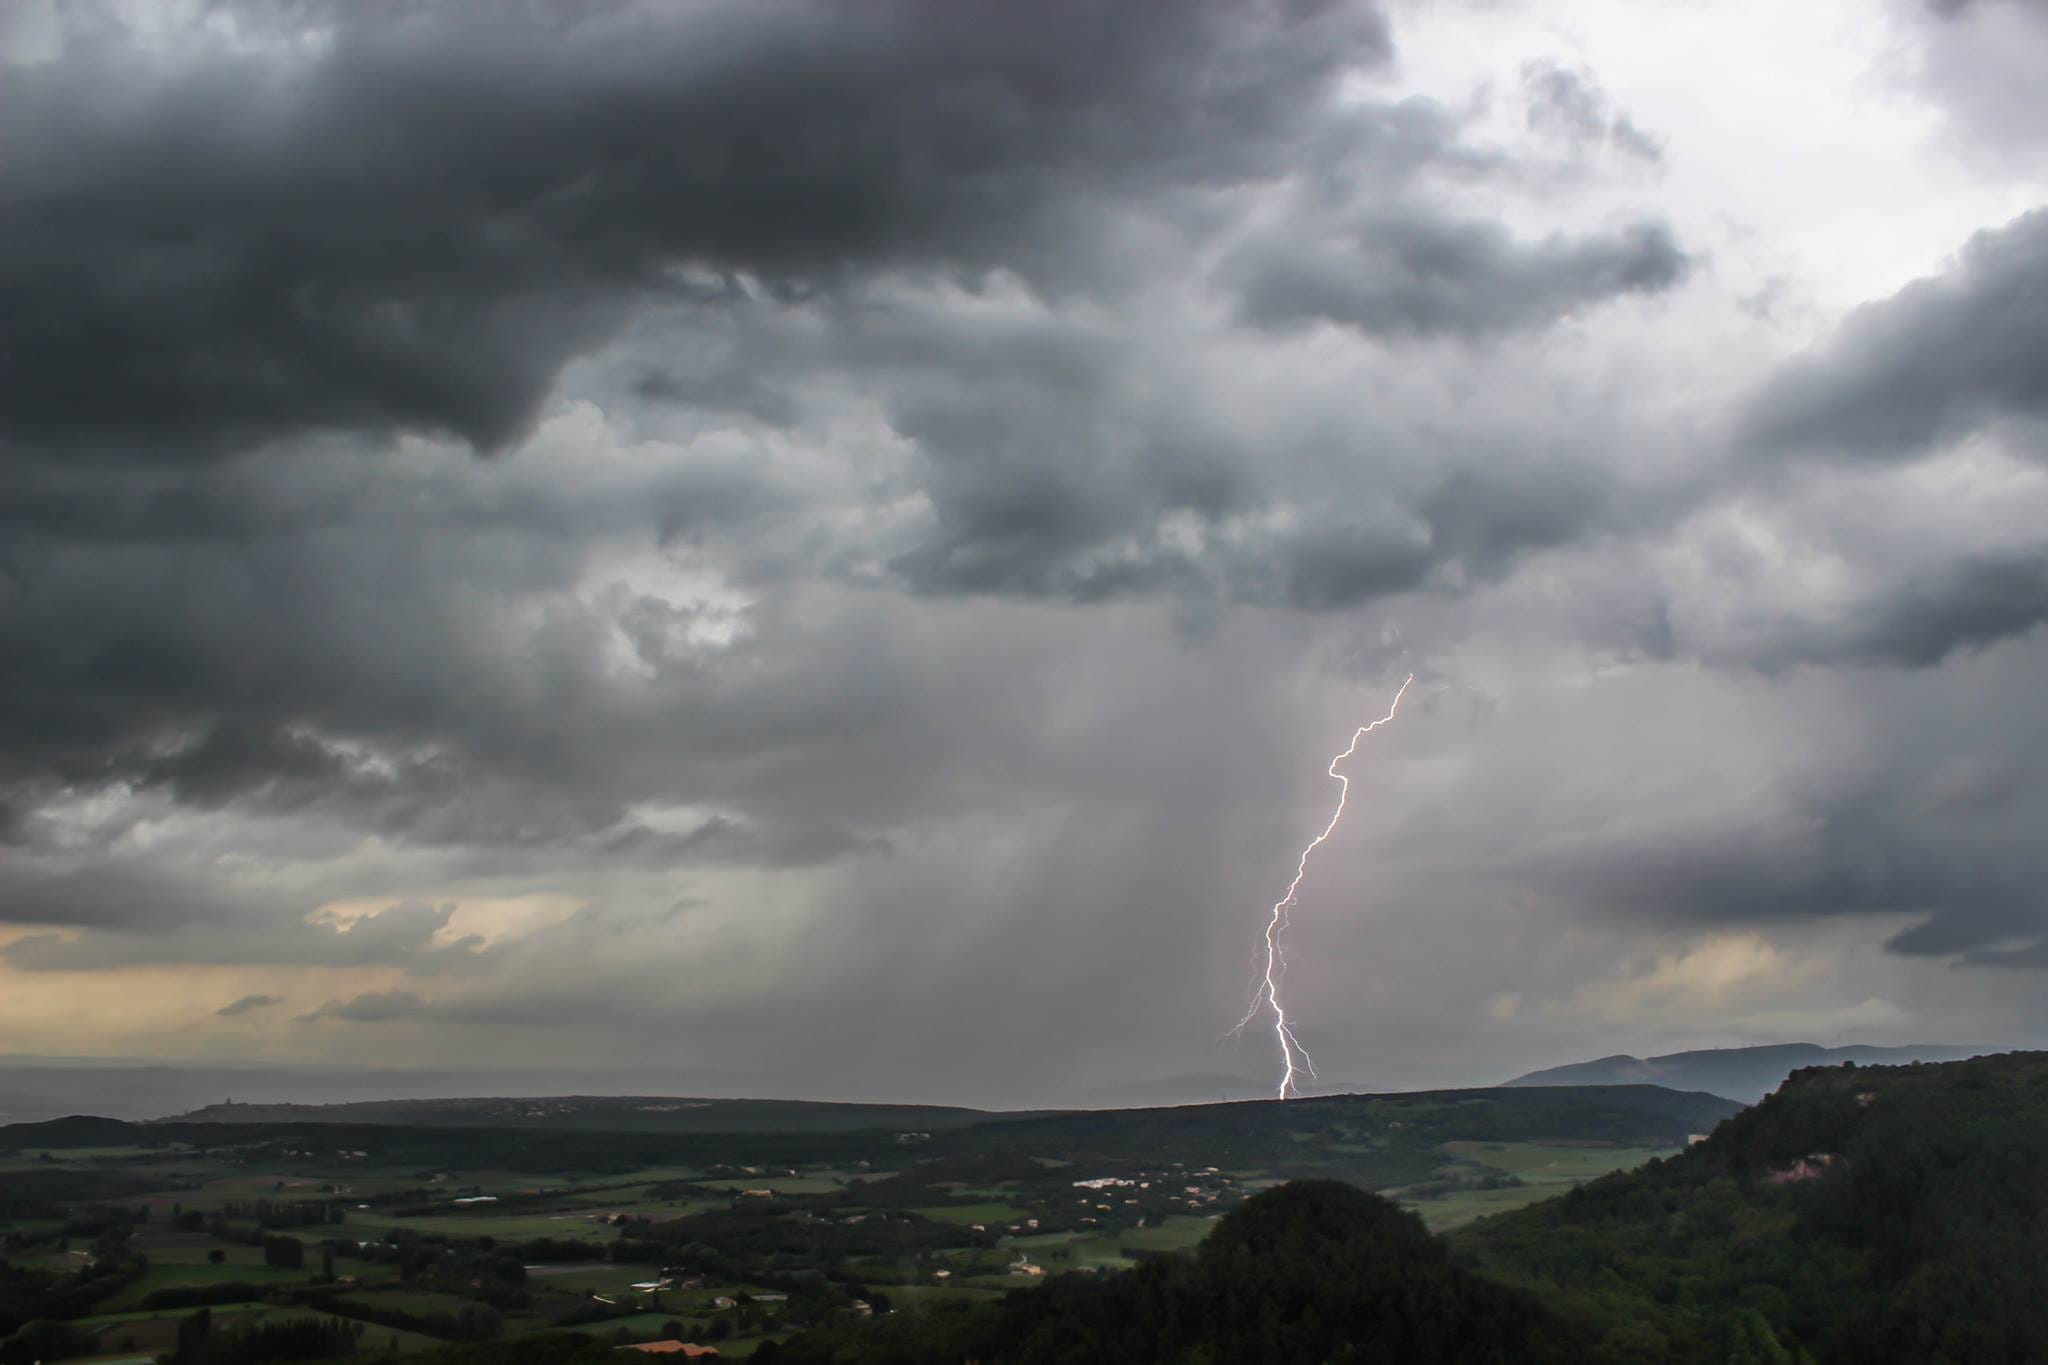 Chasse dans la Drôme avec un défilé de cellules orageuses ! Cet orage en photo a provoqué une rotation très importante au dessus de nous, à l'arrière. - 12/05/2017 16:00 - Florian MARZOLA